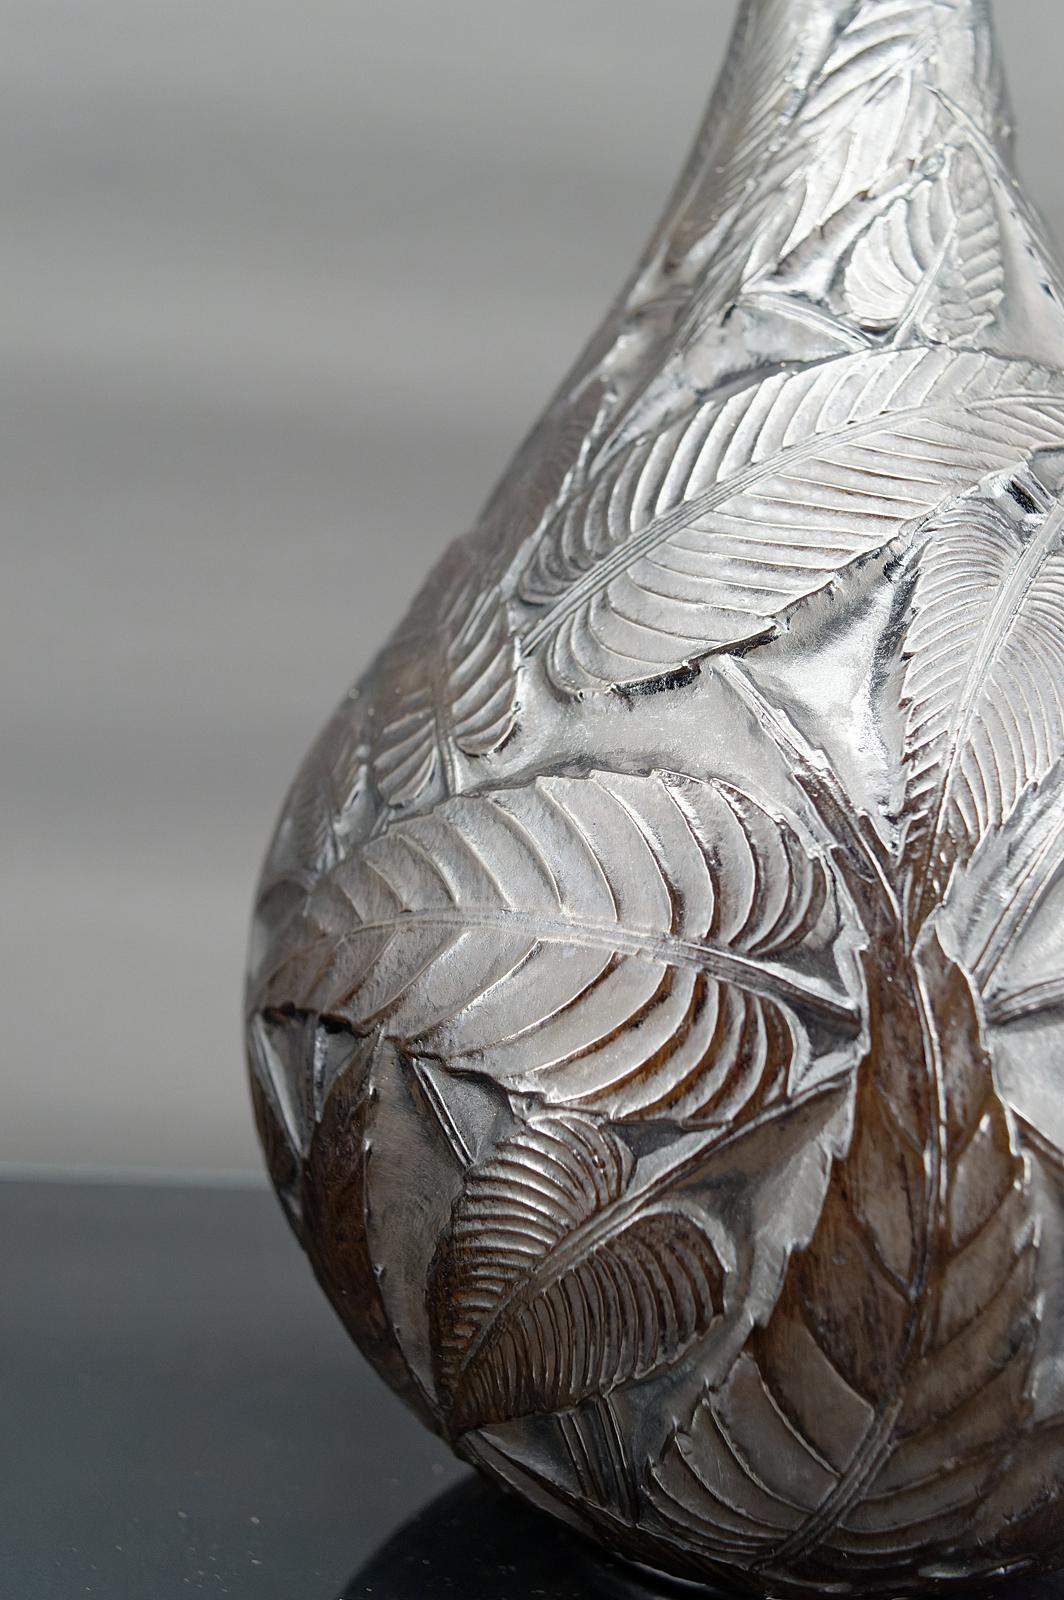  René Lalique vase, 